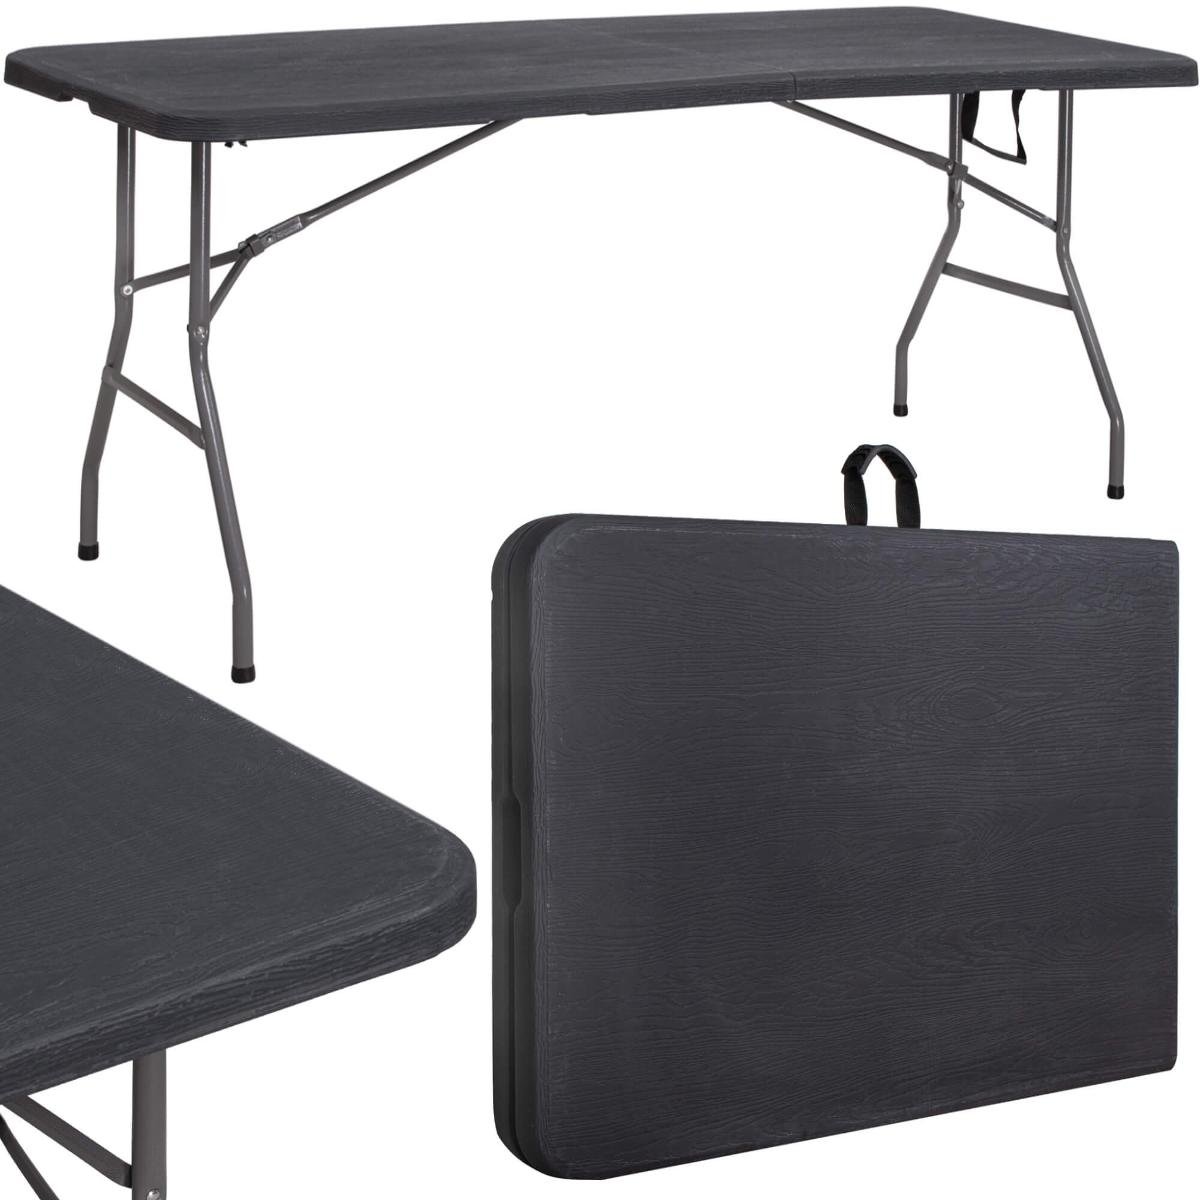 Stół cateringowy 180 cm bankietowy składany w walizkę stolik ogrodowy, turystyczny czarny GF0052